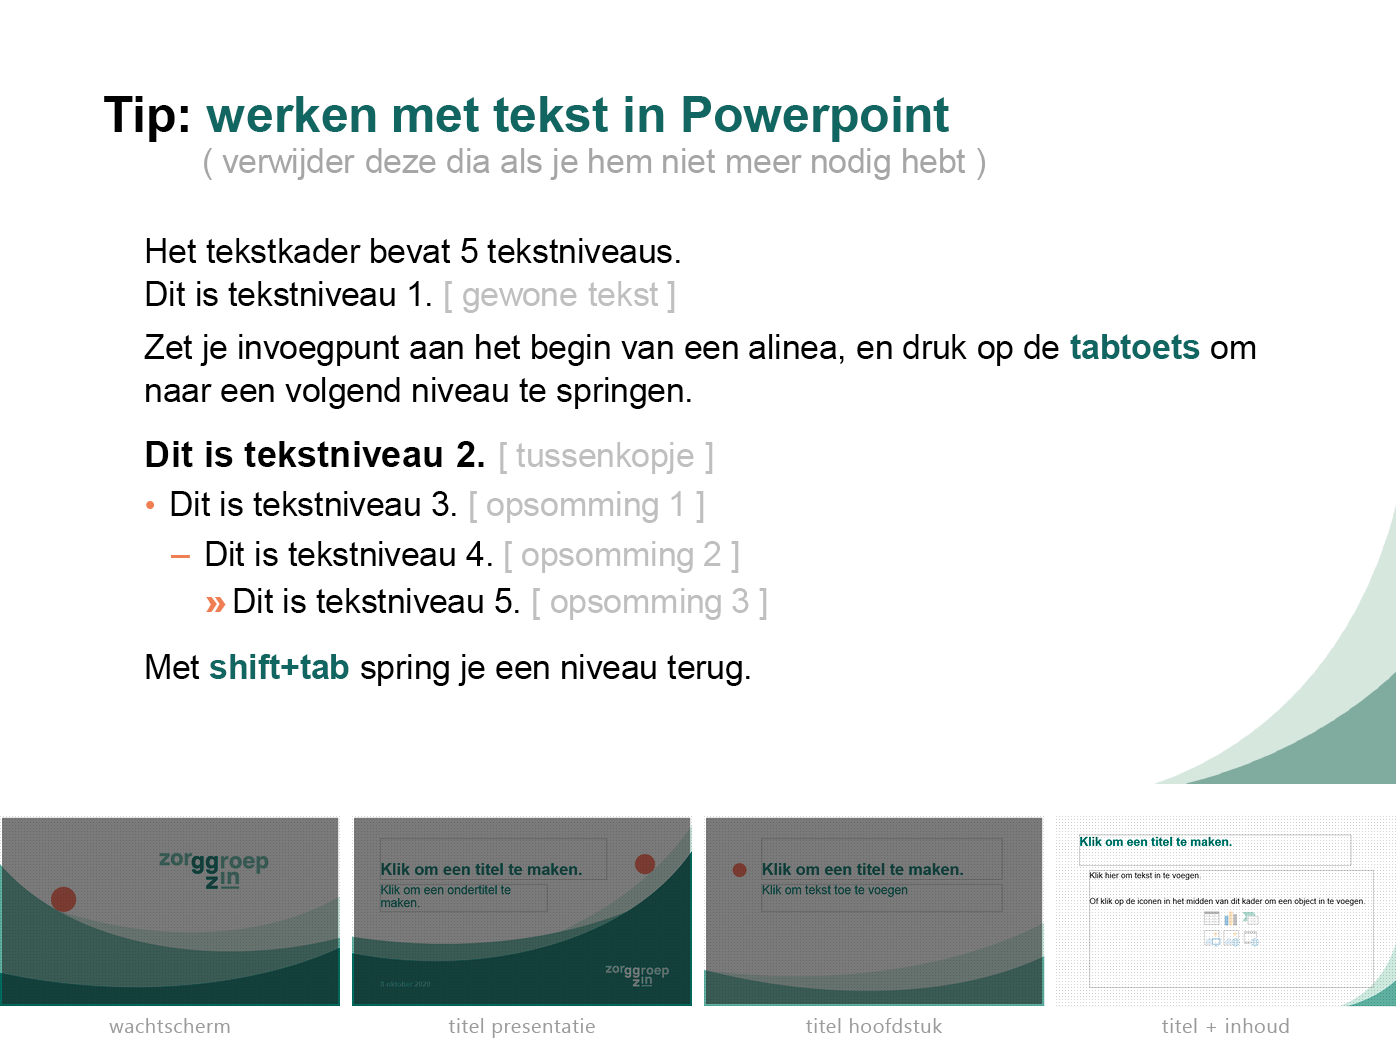 Instructie "werken met tekst in Powerpoint" uit het Powerpoint-sjabloon voor zorGGroep Zin.